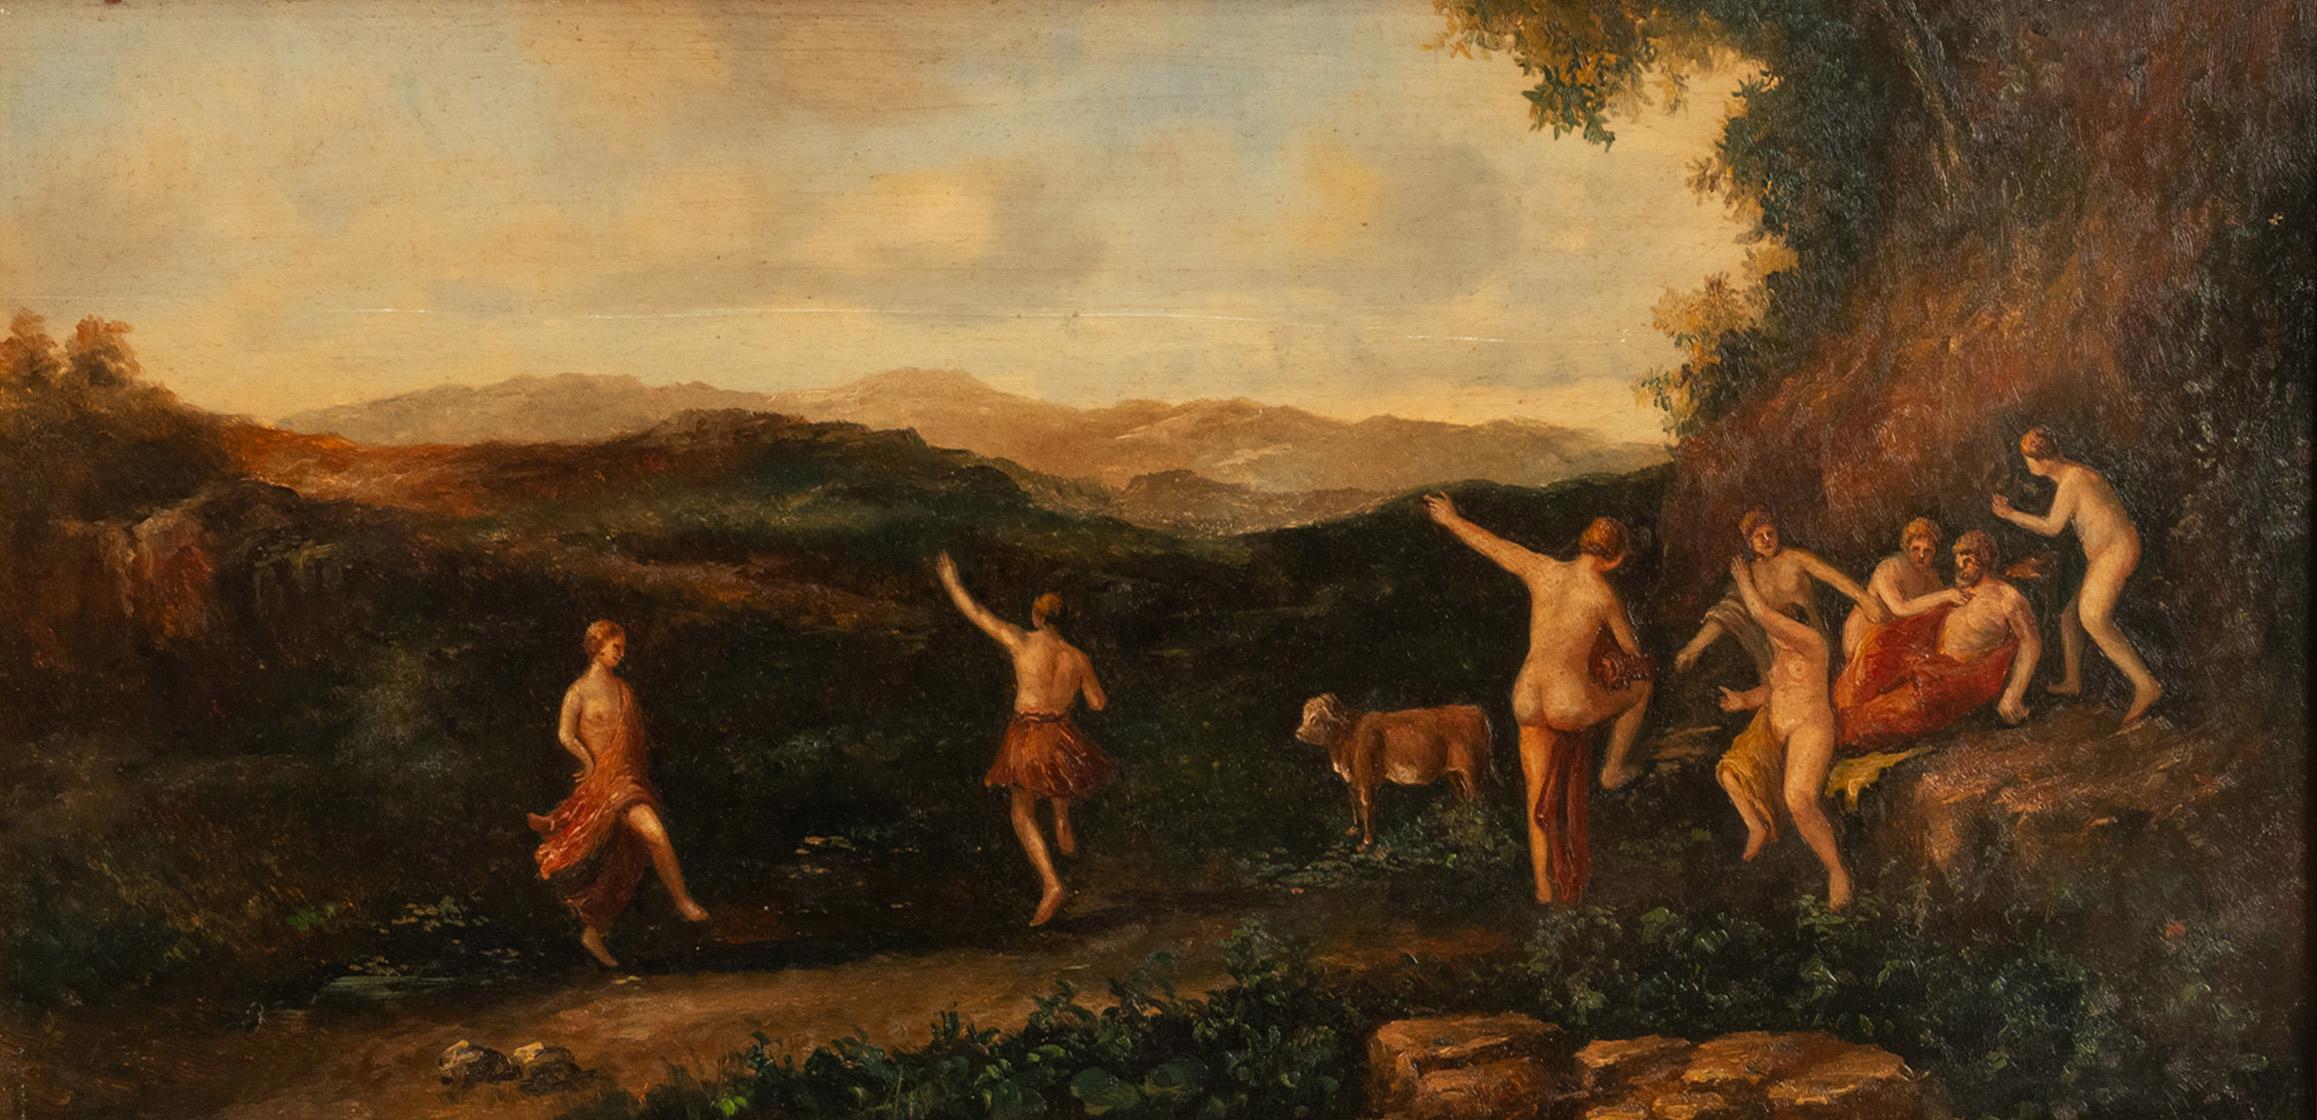 Ancienne peinture néoclassique du 19ème siècle - Dansant des nymphes - 1850 - Painting de Cornelius van Poelenburgh